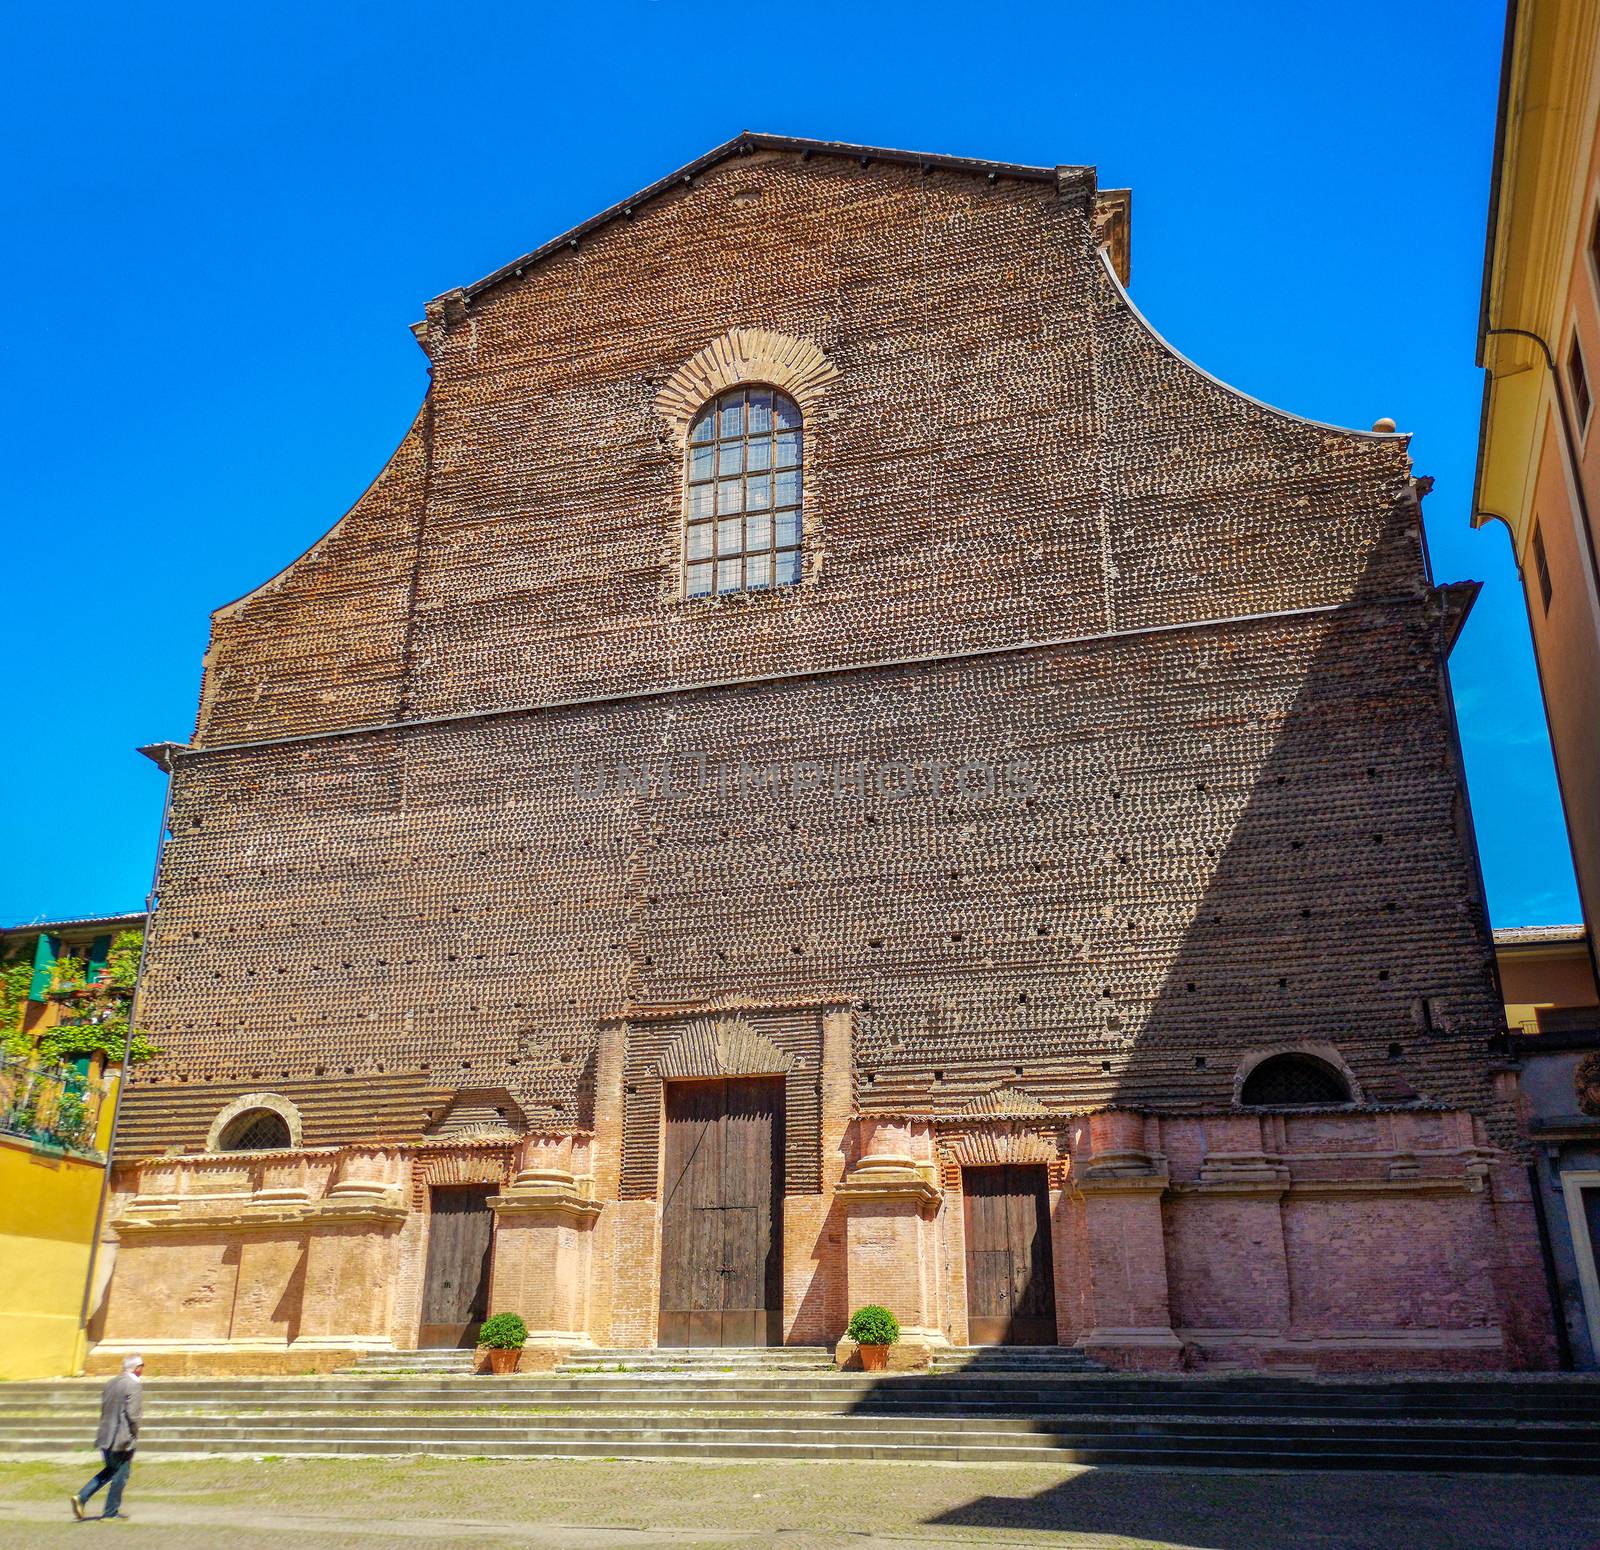 the former Santa Lucia church of Via Castiglione in Bologna - Emilia Romagna - Italy .